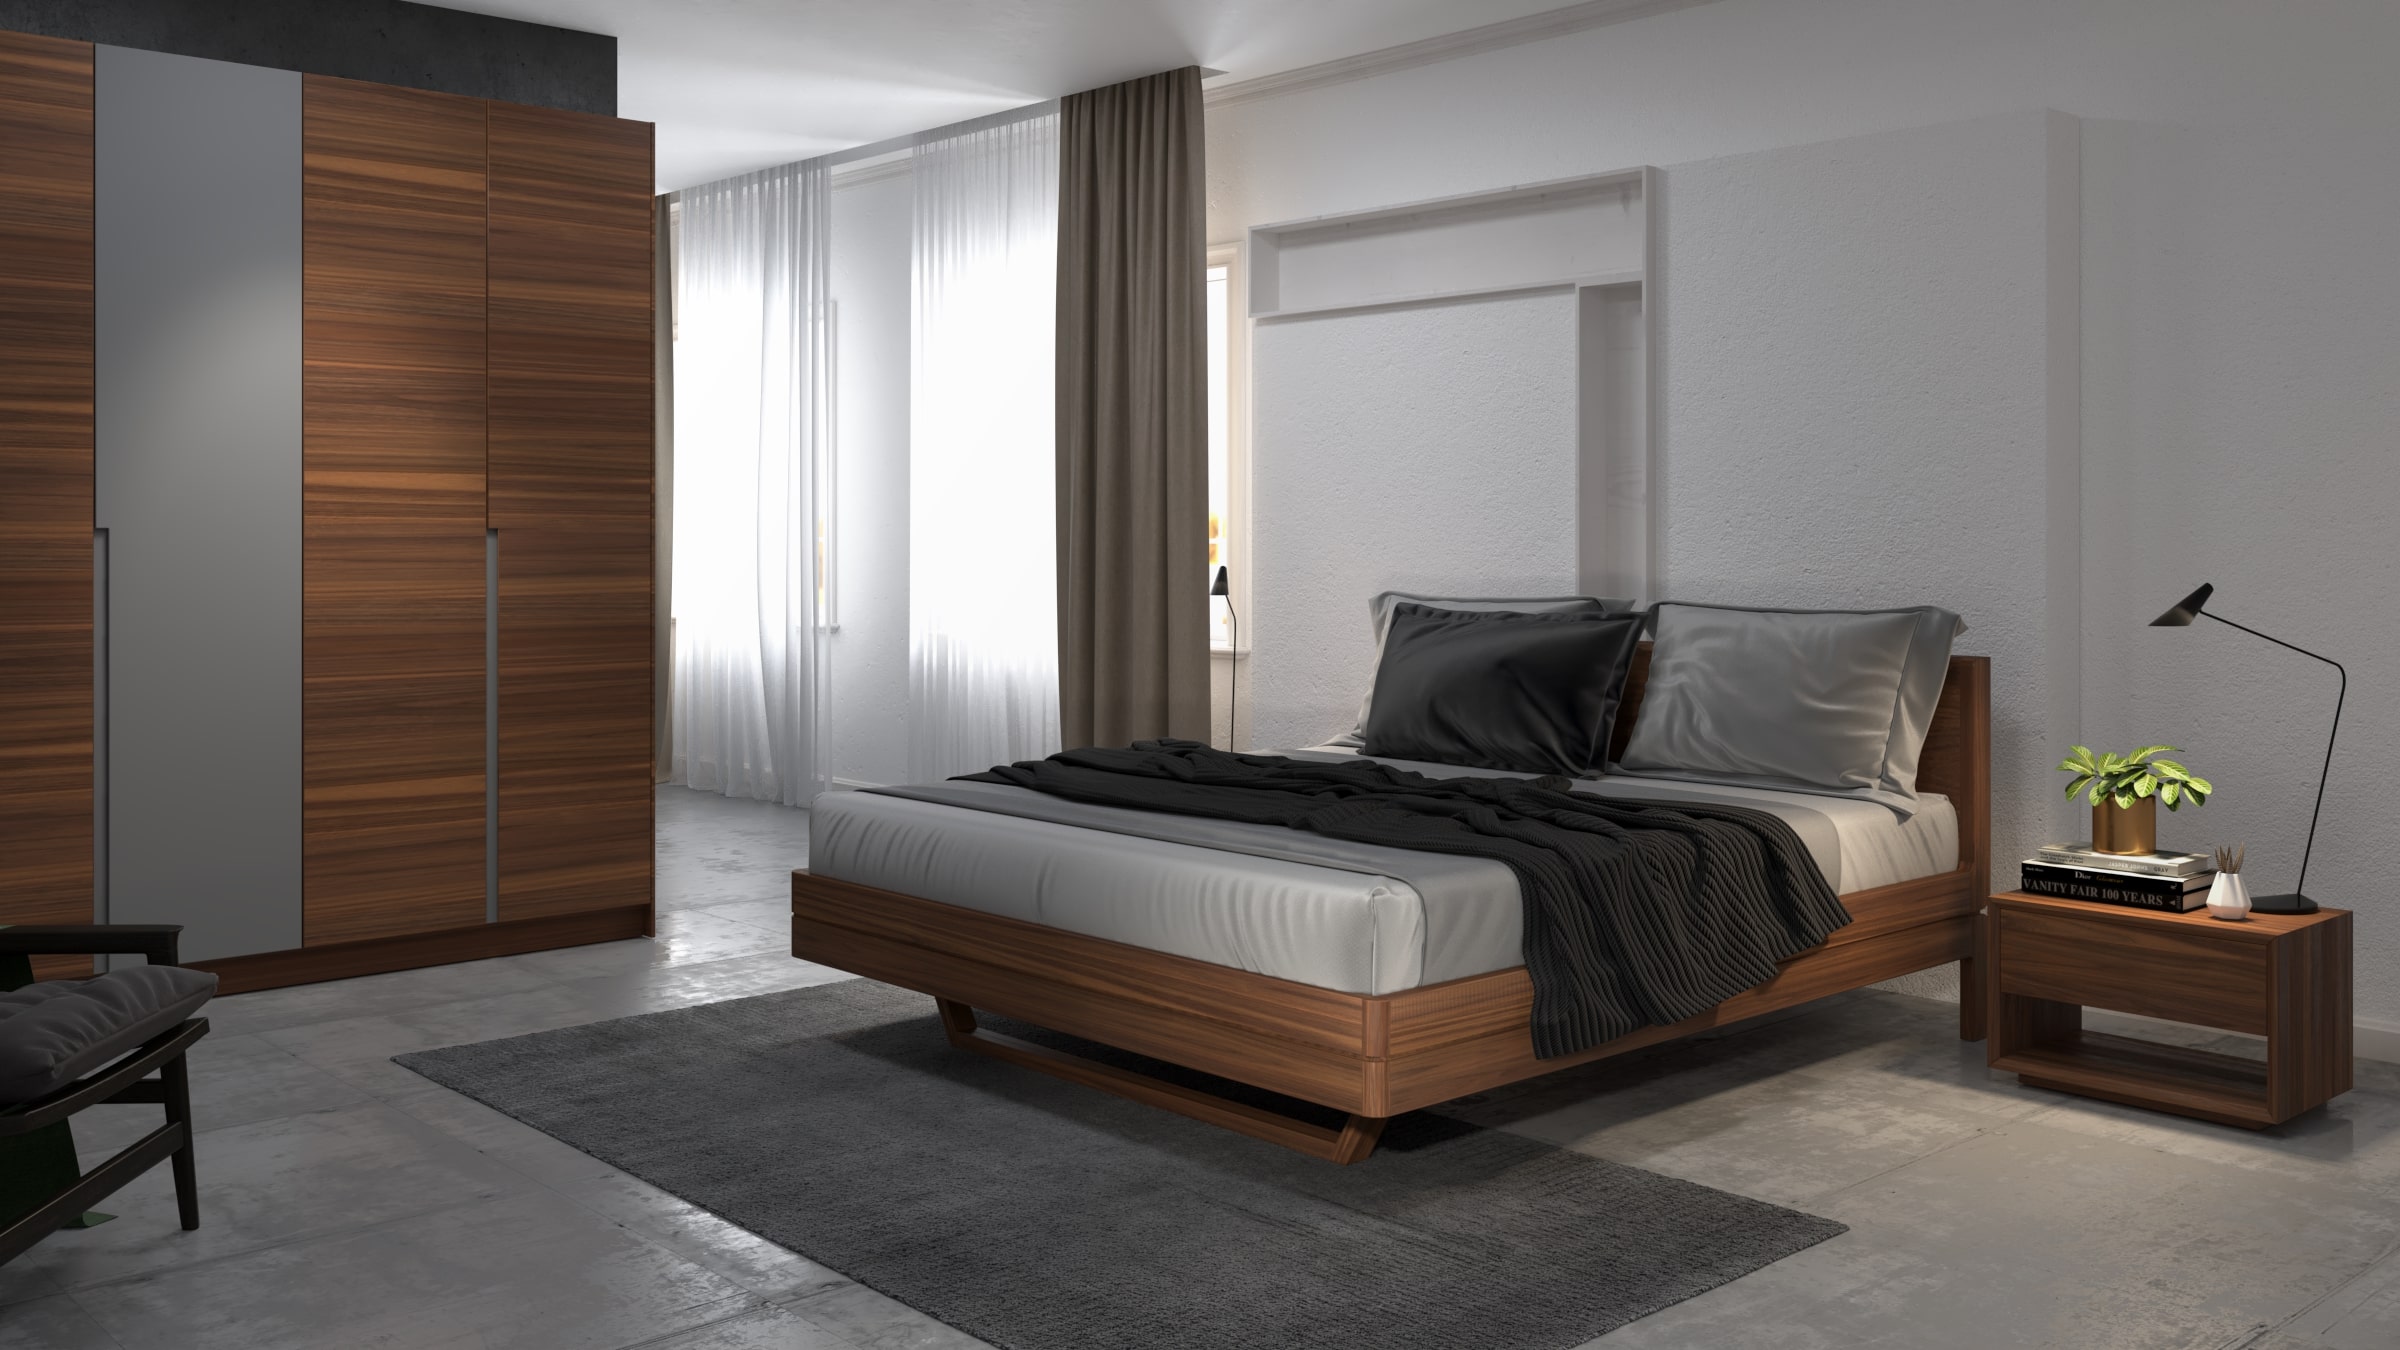 Giường ngủ gỗ đinh hương giá bao nhiêu năm 2020?